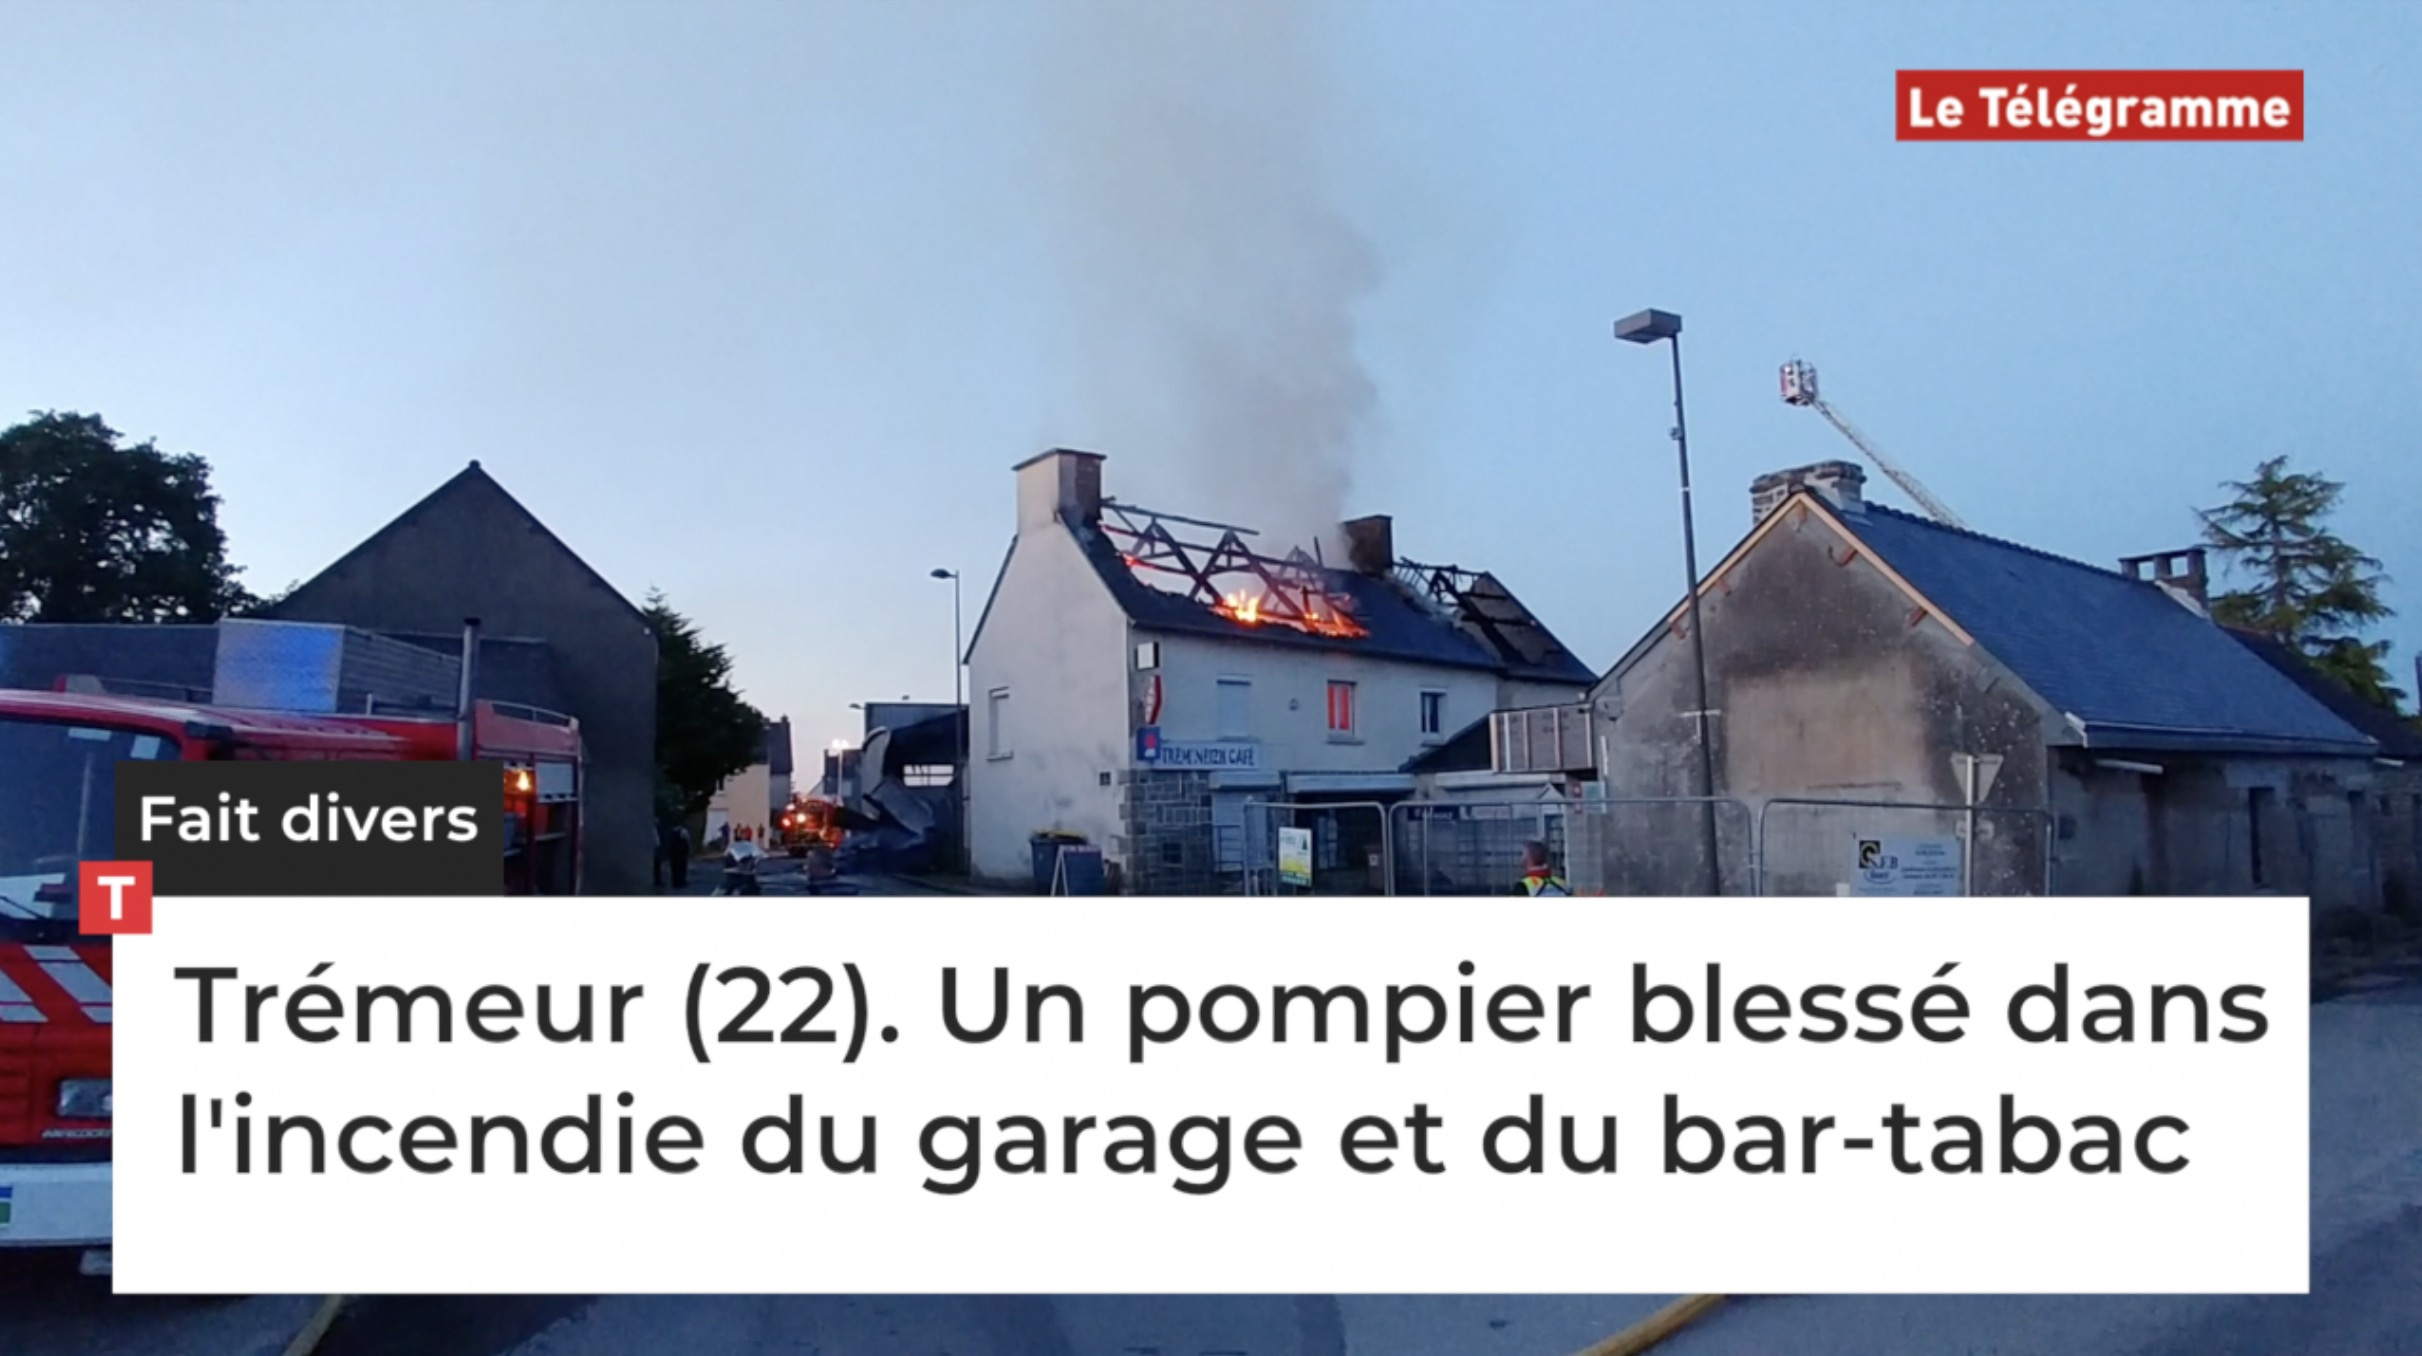 Trémeur (22). Un pompier blessé dans l'incendie du garage et du bar-tabac (Le Télégramme)